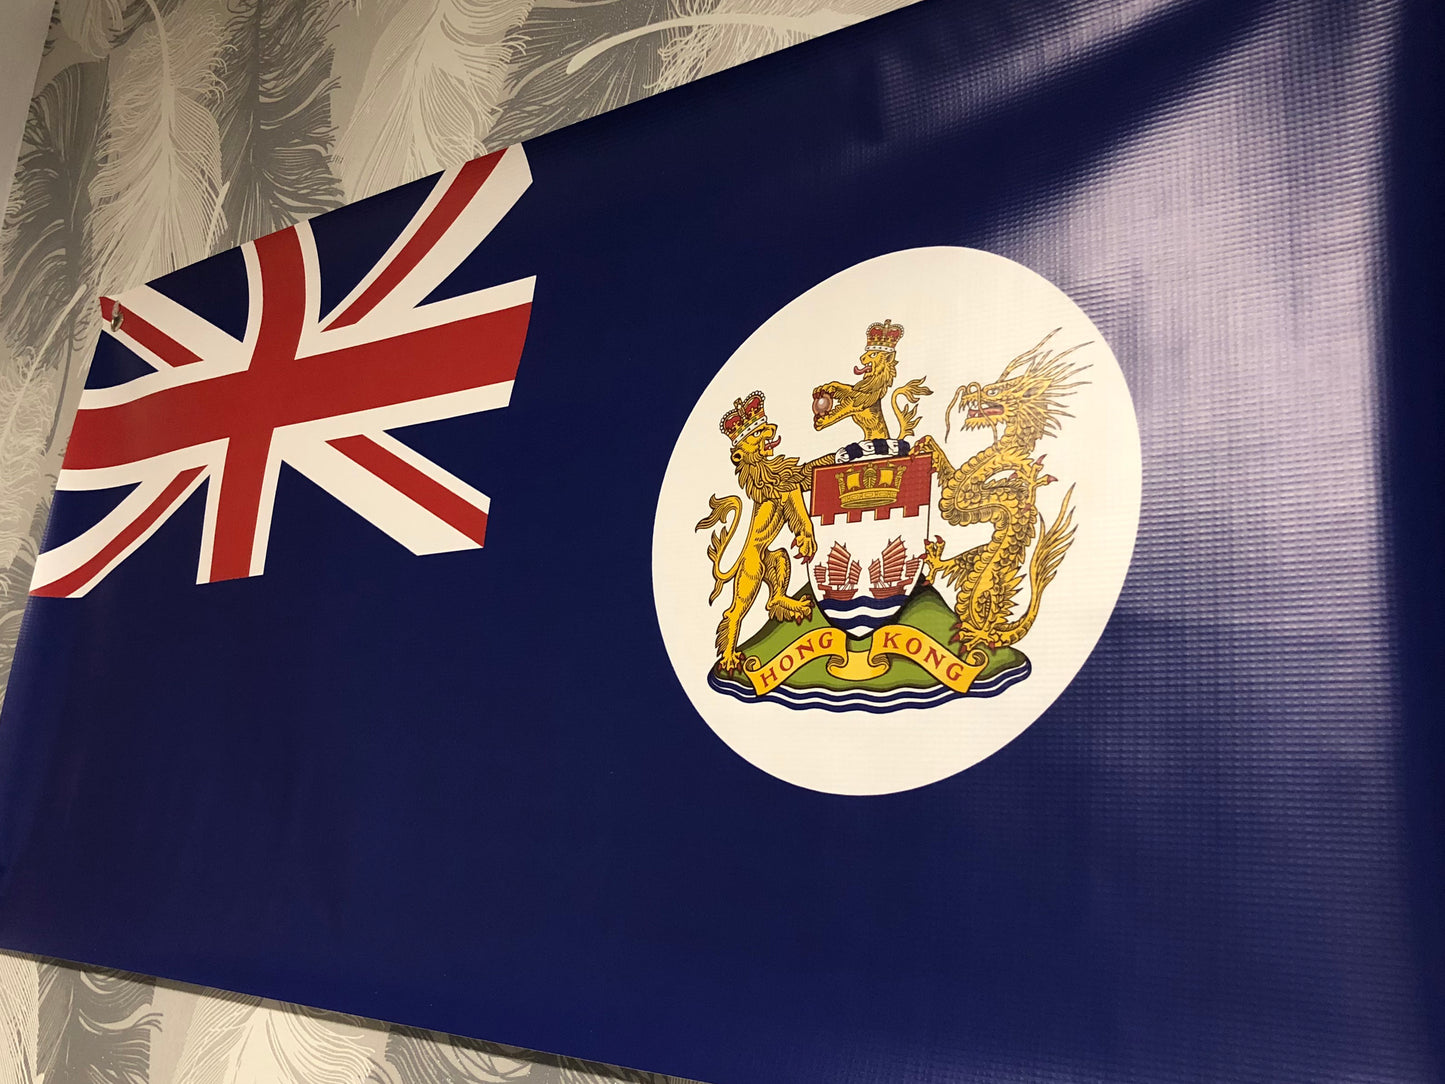 香港旗帆布 Hong Kong Flag PVC Banner 🇬🇧 Made in Britain ✨New Arrival✨